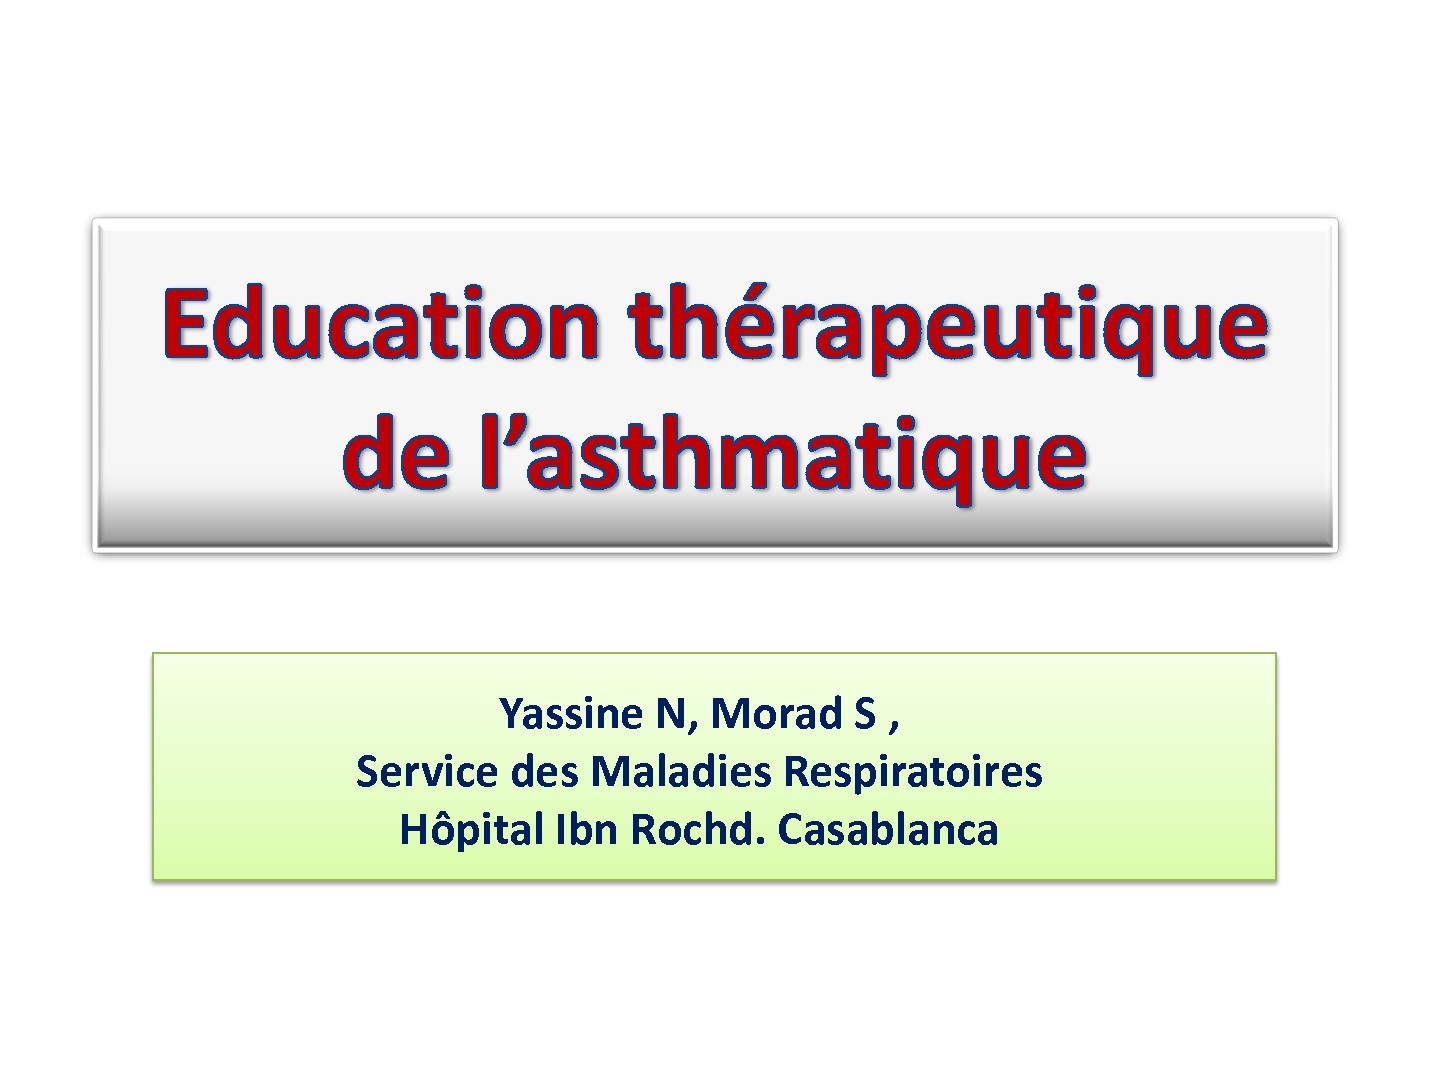 Education de l'asthmatique. N. Yassine, S. Morad